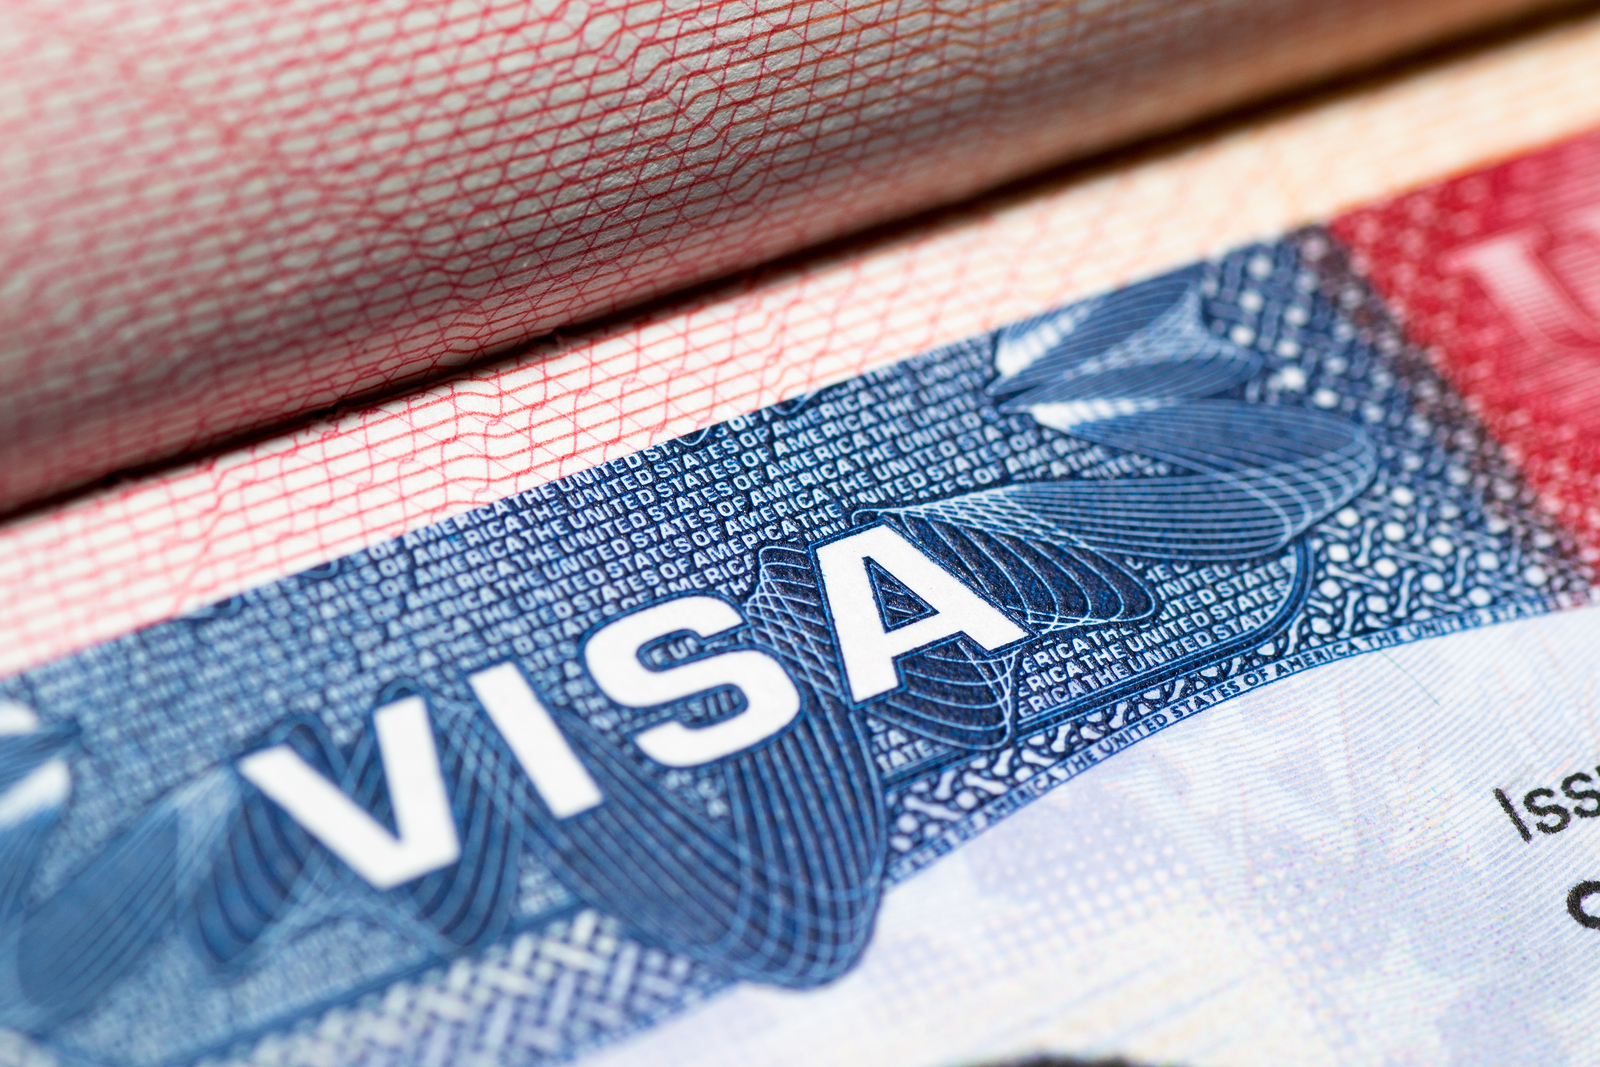 Visa pin pemadaman akhir minggu pada 'kegagalan perangkat keras'